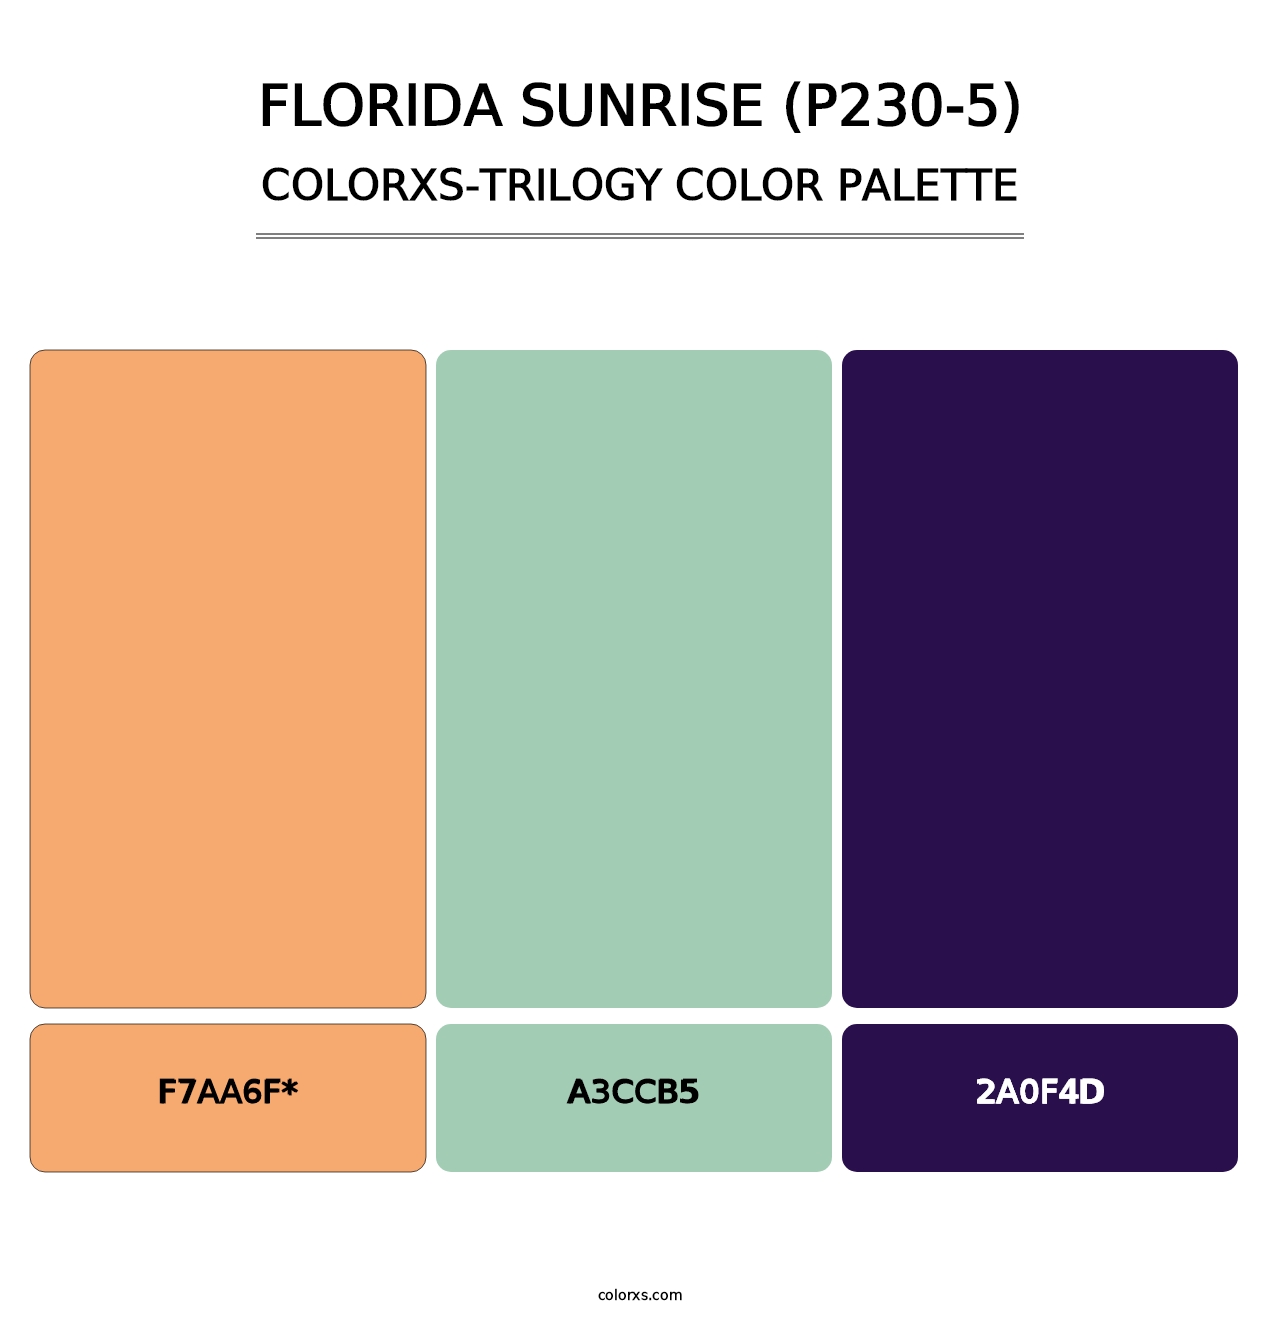 Florida Sunrise (P230-5) - Colorxs Trilogy Palette